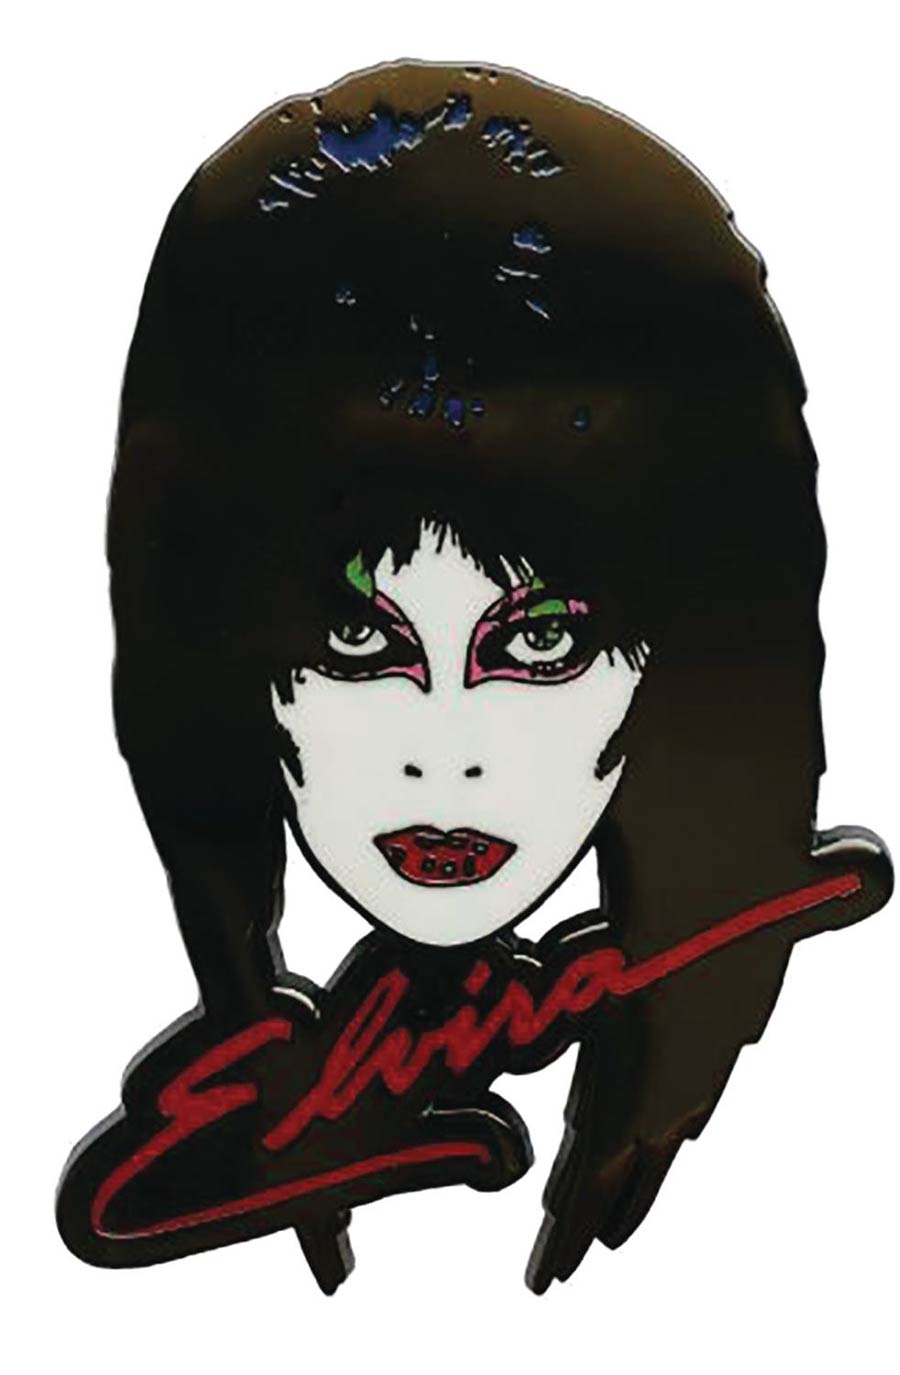 Elvira Enamel Pin - 1980s